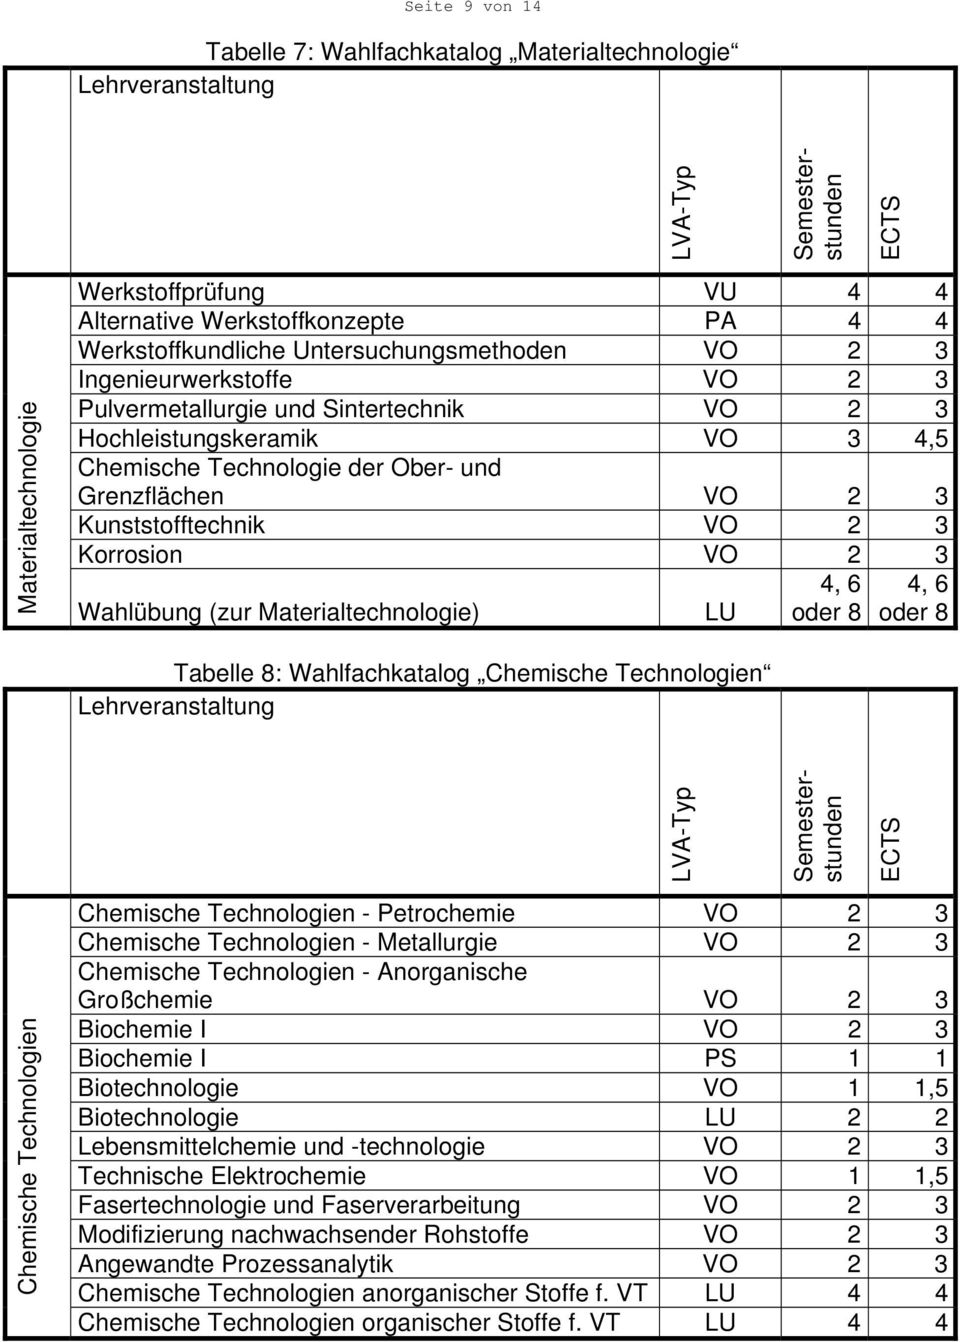 Wahlübung (zur Materialtechnologie) LU 4, 6 oder 8 4, 6 oder 8 Tabelle 8: Wahlfachkatalog Chemische Technologien Chemische Technologien Chemische Technologien - Petrochemie VO 2 3 Chemische